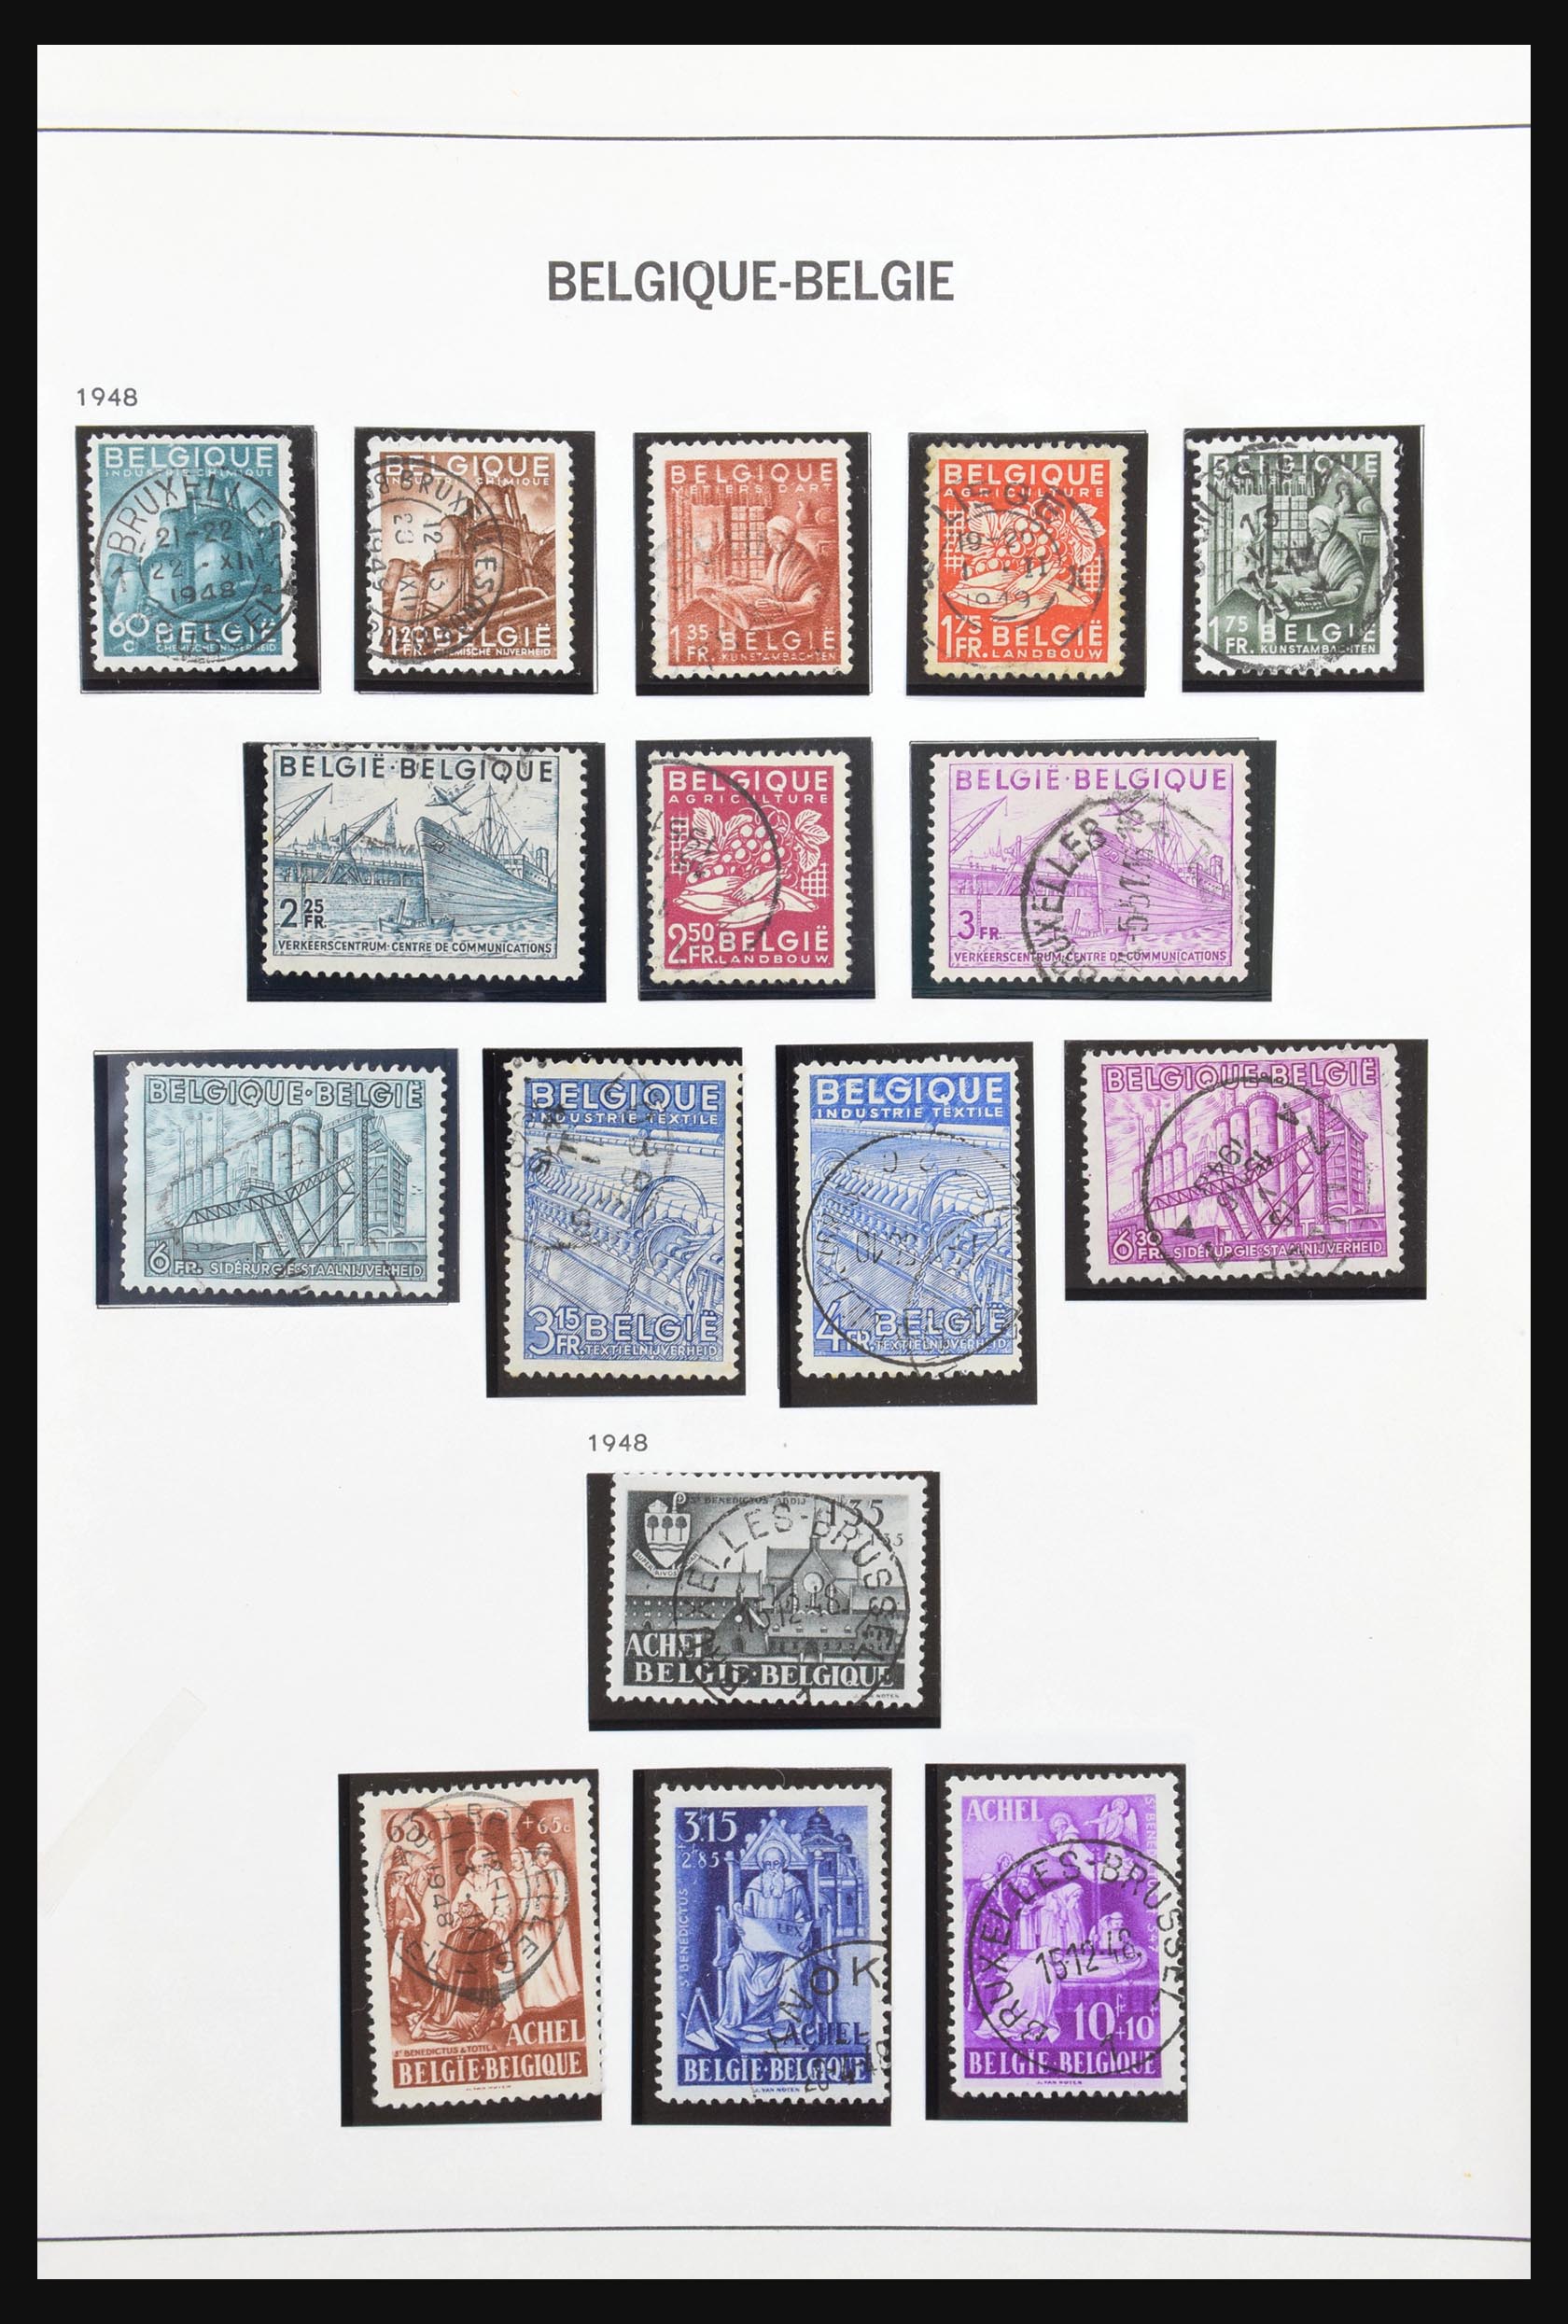 31178 168 - 31178 Belgium 1849-1951.